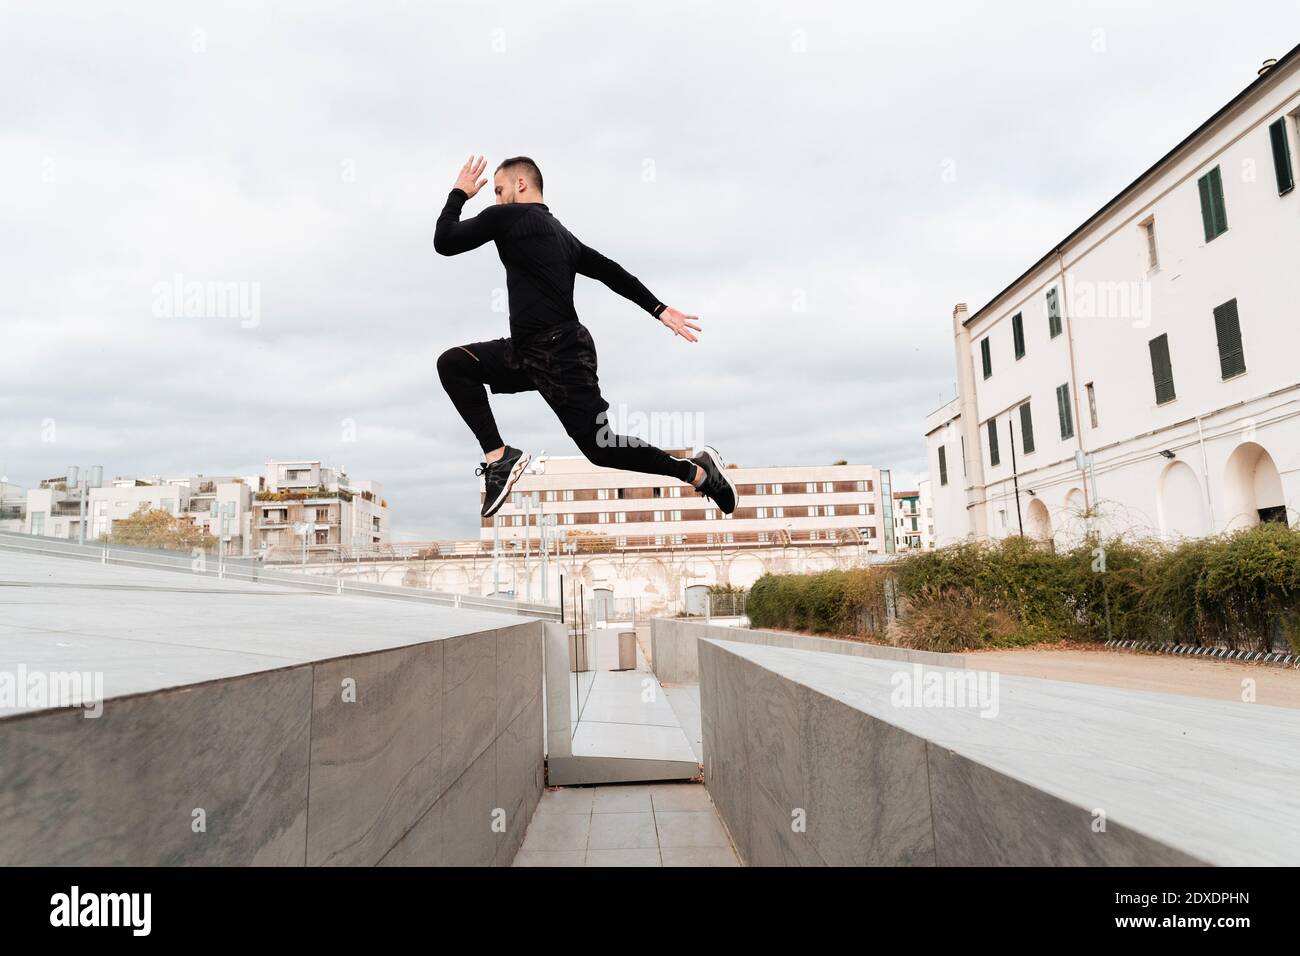 Homme sautant sur le mur contre un ciel dégagé Banque D'Images